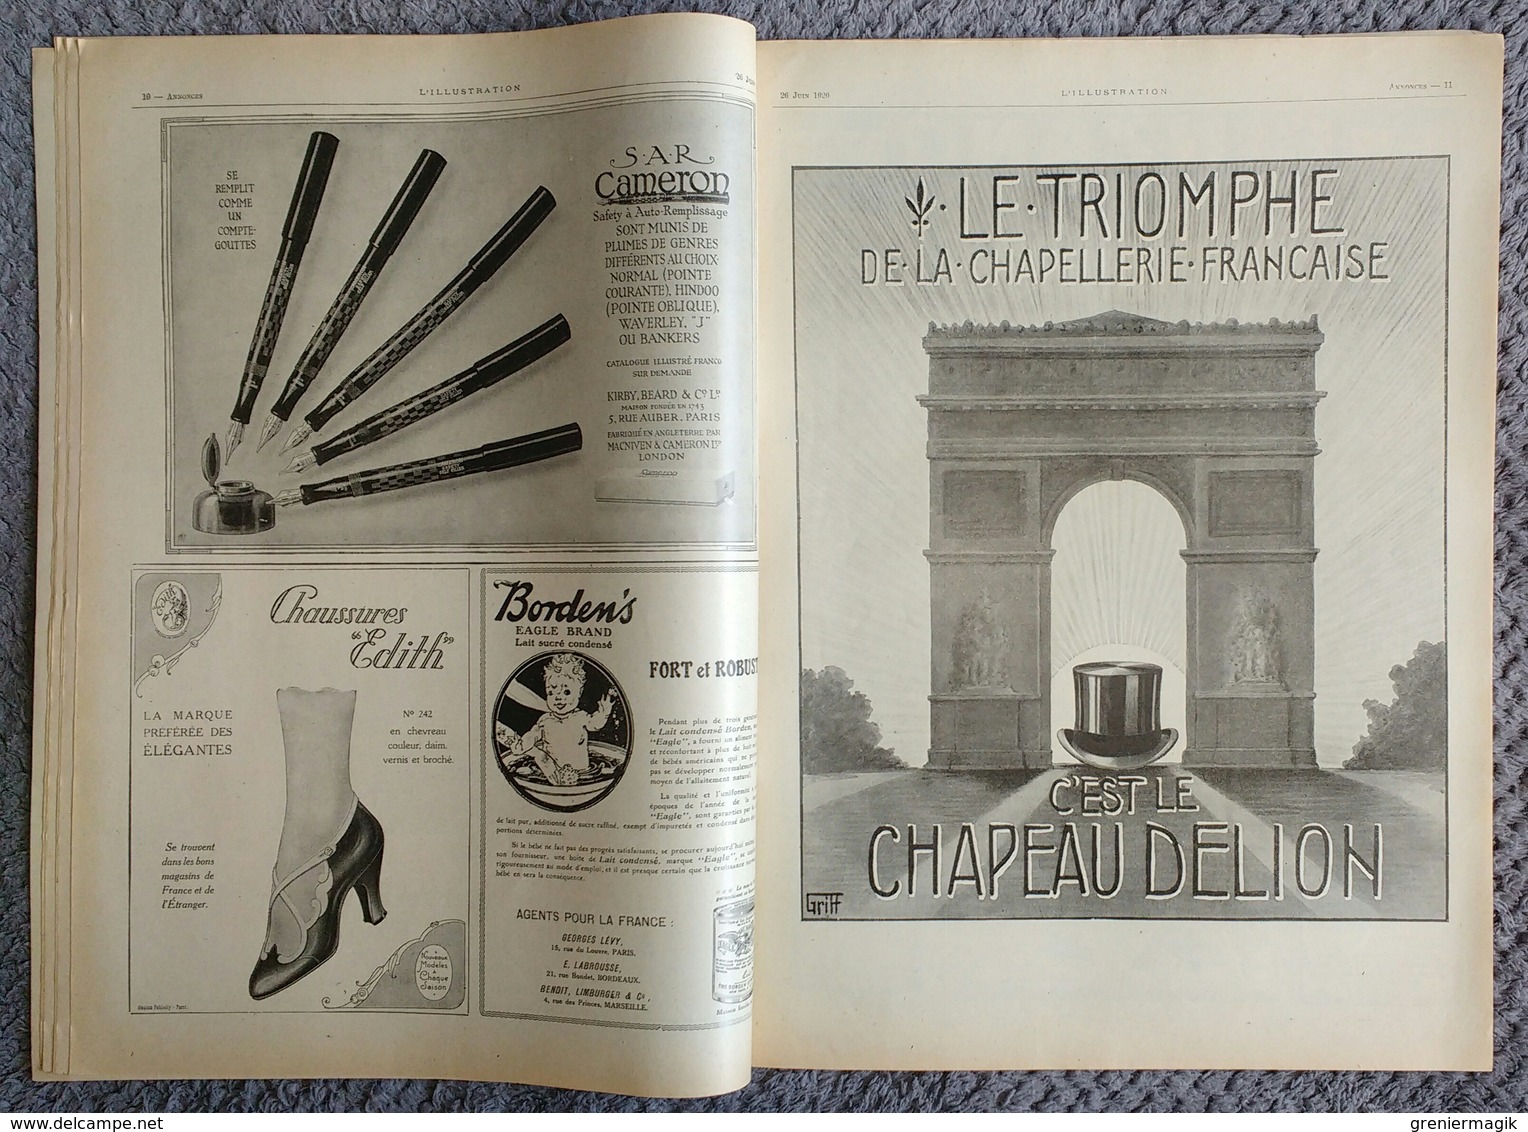 L'Illustration 4034 26 juin 1920 Congrès féministe de Genève/Verrières art du vitrail/Dormans/Moulins de Meaux/Mossoul